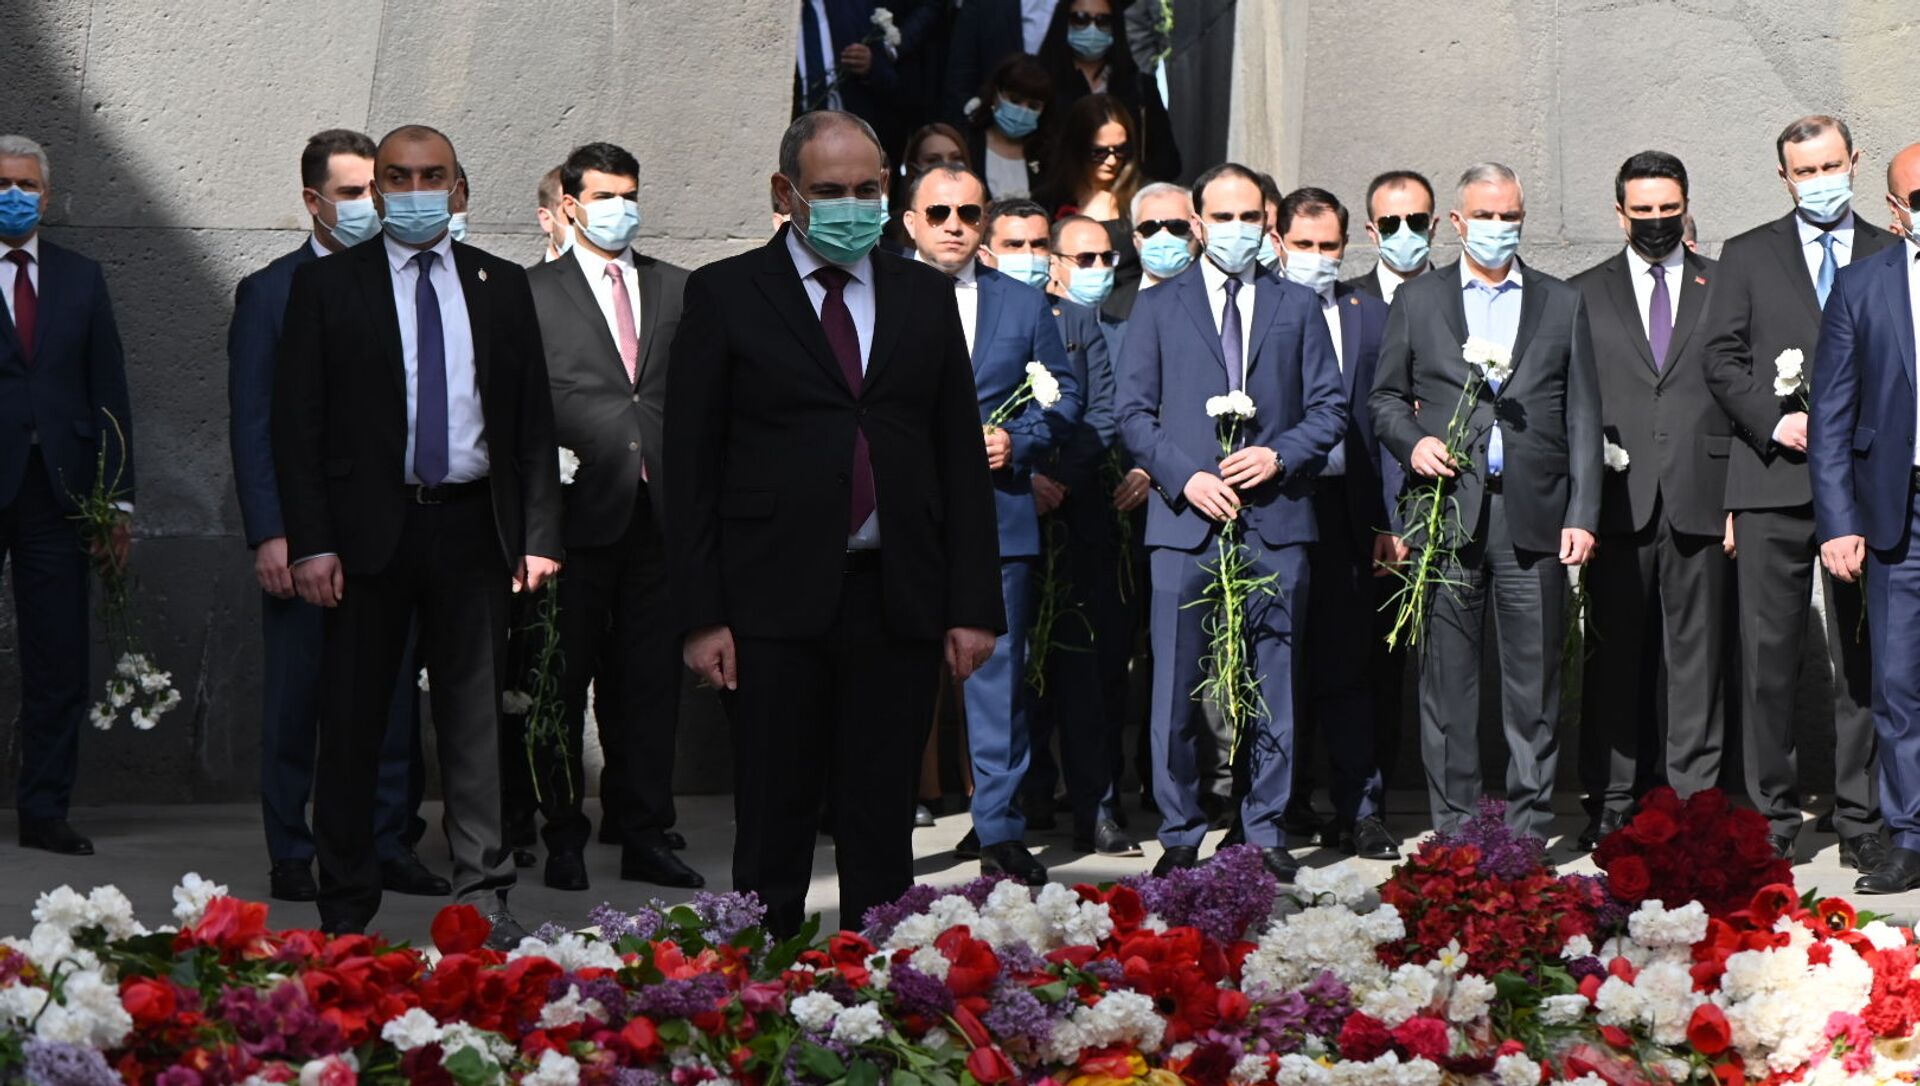 Никол Пашинян посетил мемориальный комплекс Цицернакаберд (24 апреля 2021). Ереван - Sputnik Армения, 1920, 24.04.2021